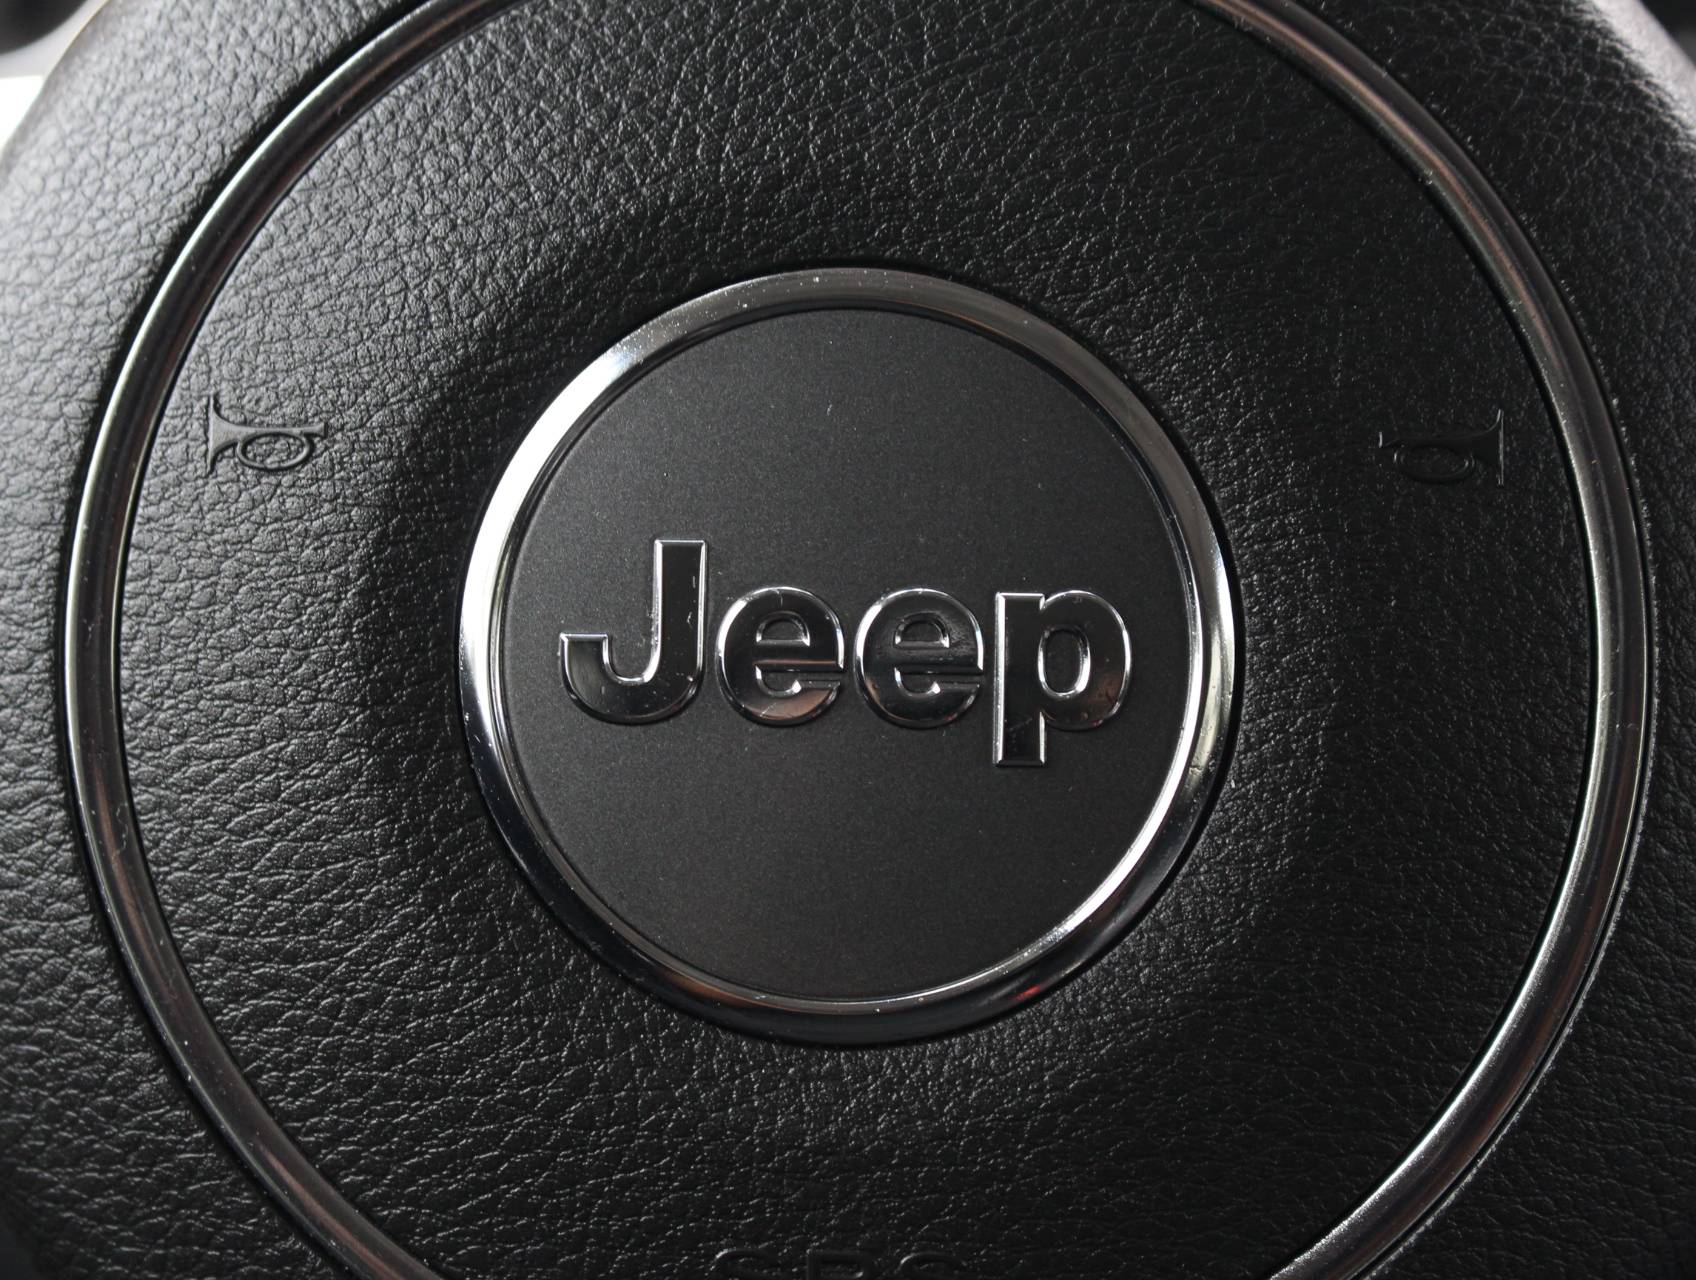 Florida Fine Cars - Used JEEP COMPASS 2015 MARGATE LATITUDE